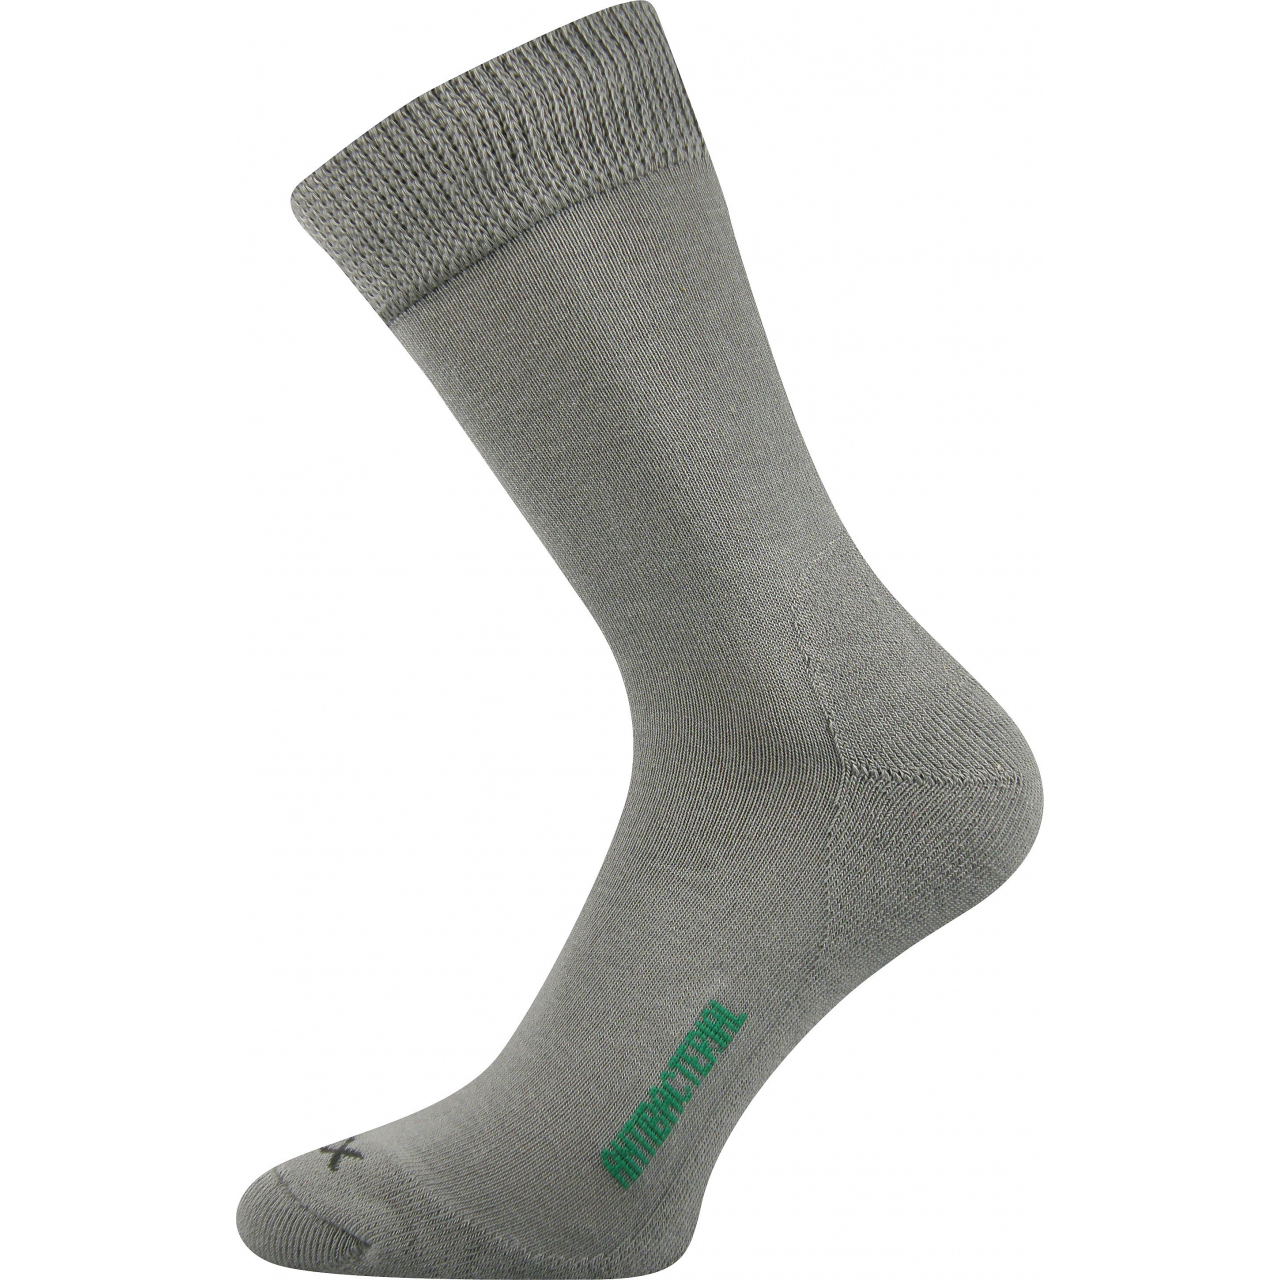 Ponožky zdravotní Voxx Zeus - světle šedé, 35-38